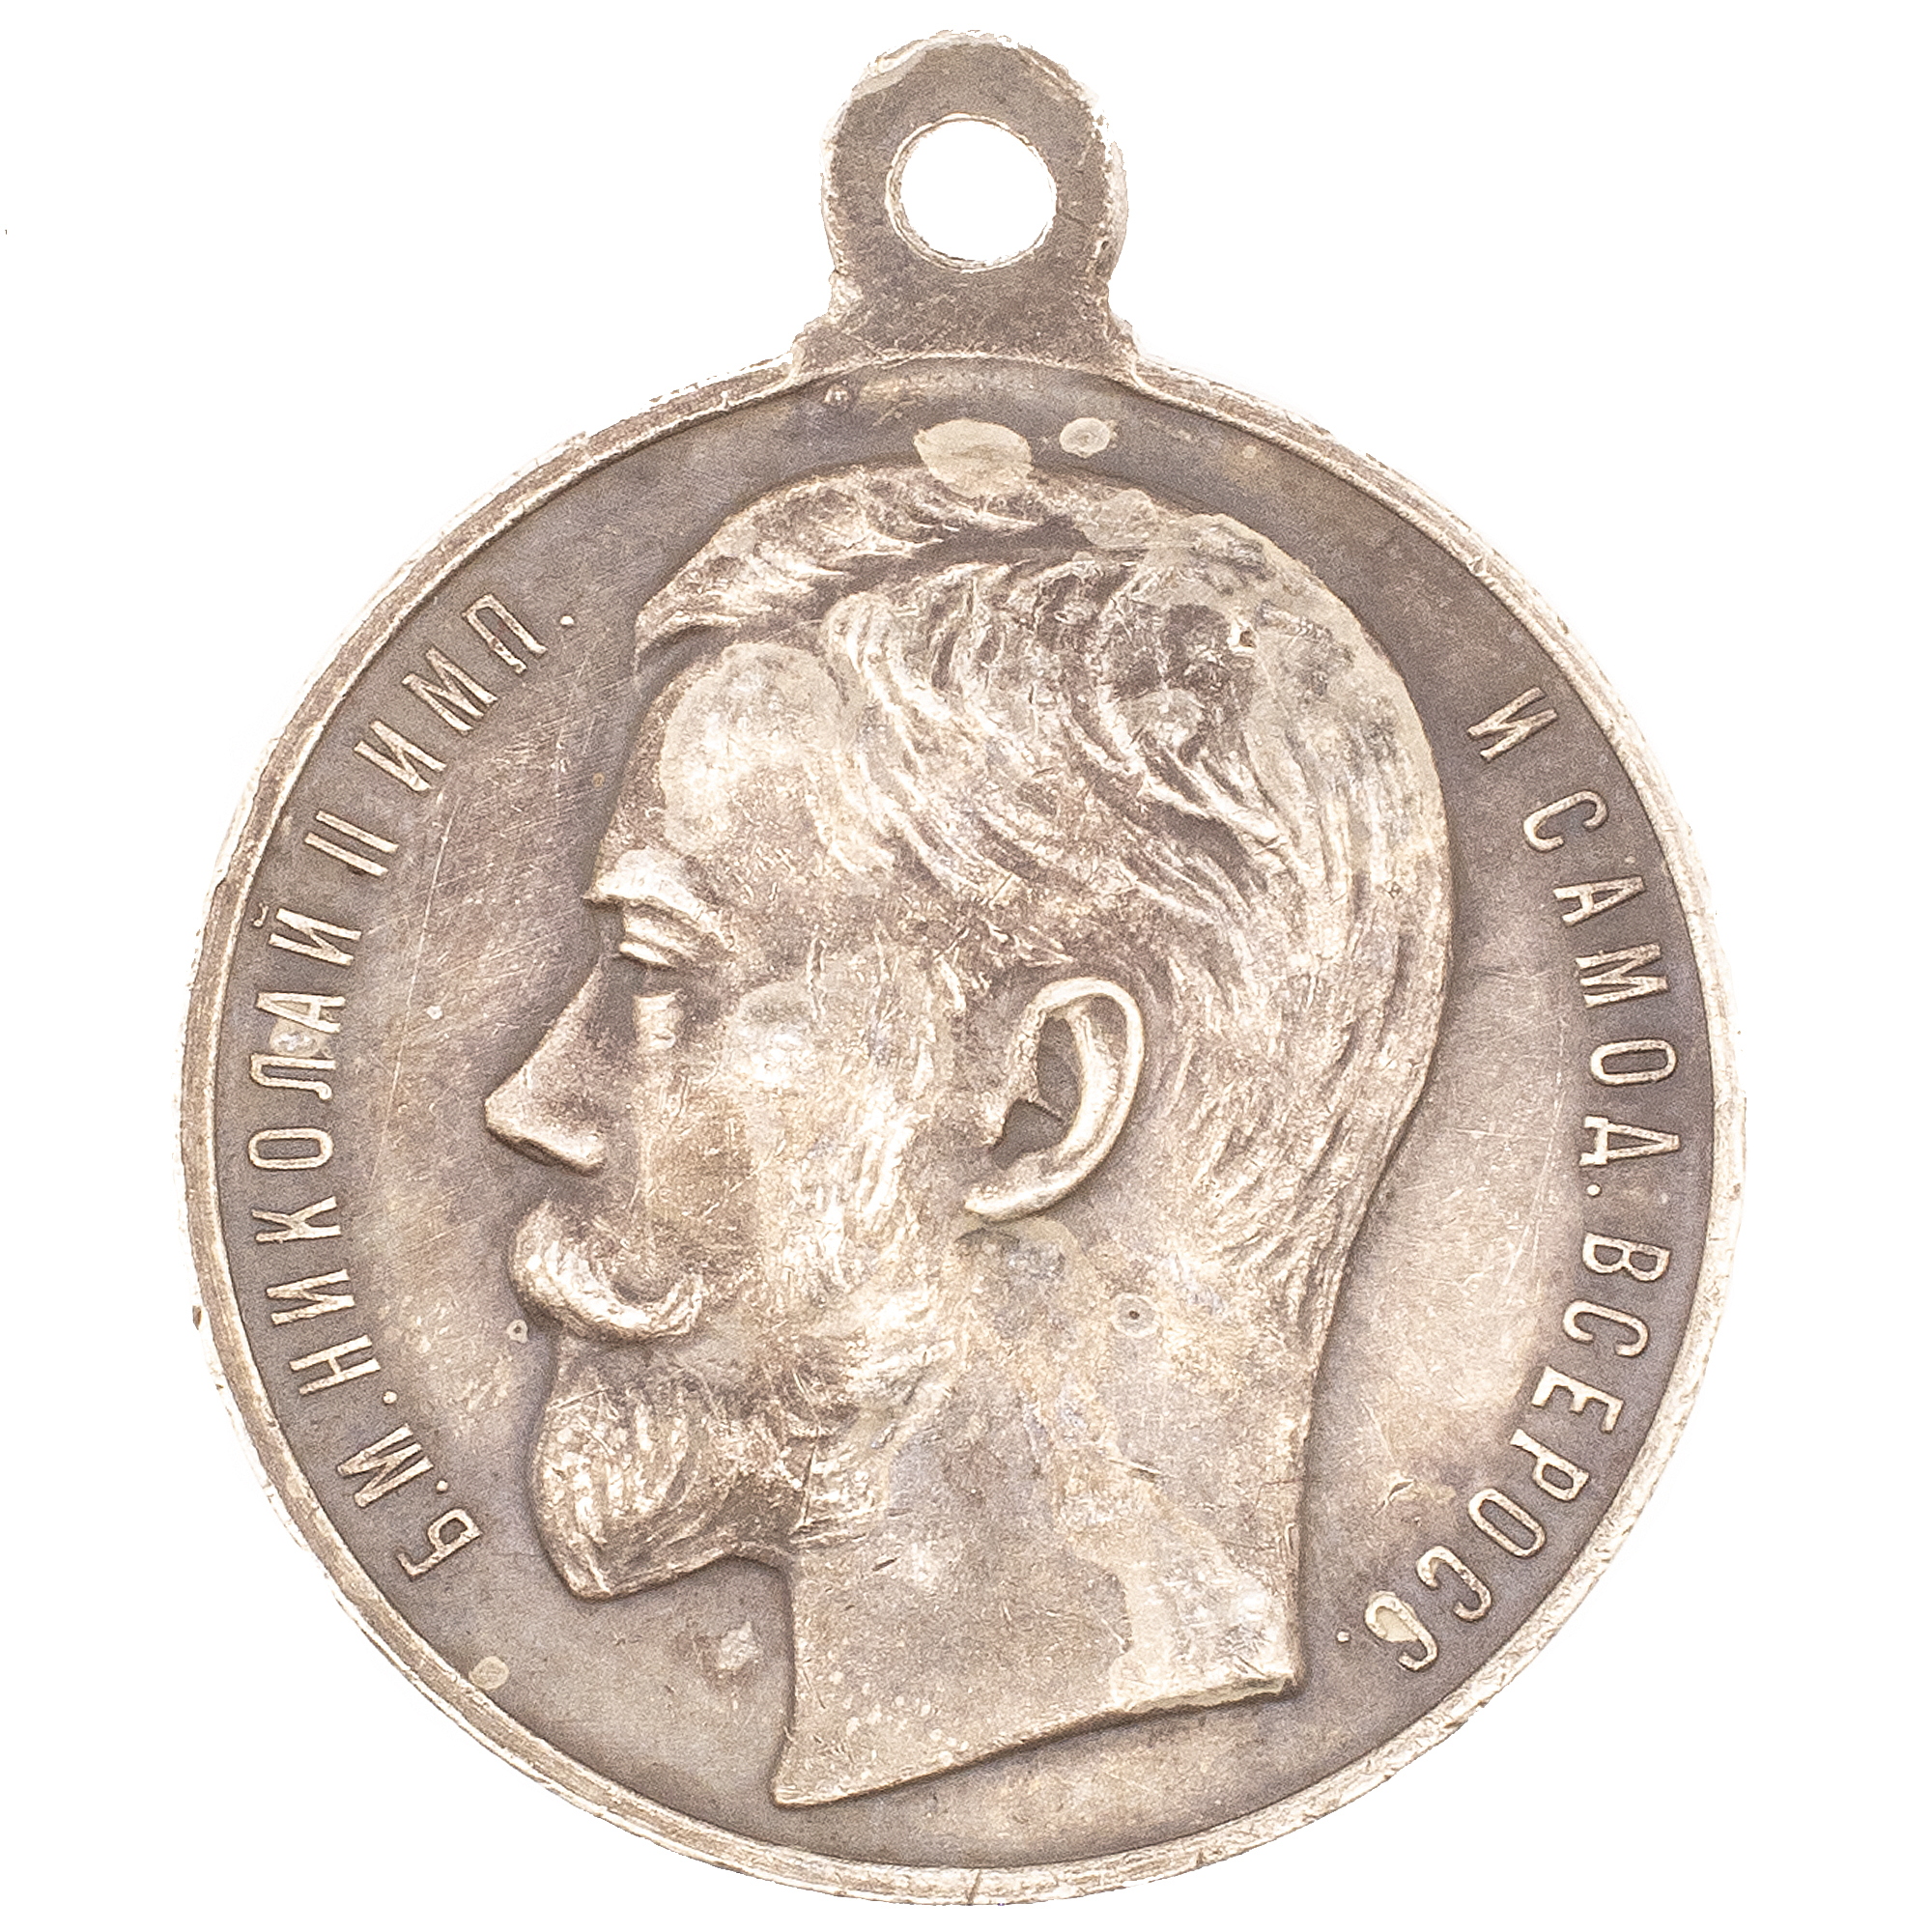 Медаль "За Усердие" с портретом Императора Николая II (образца 1915 г). Серебро.